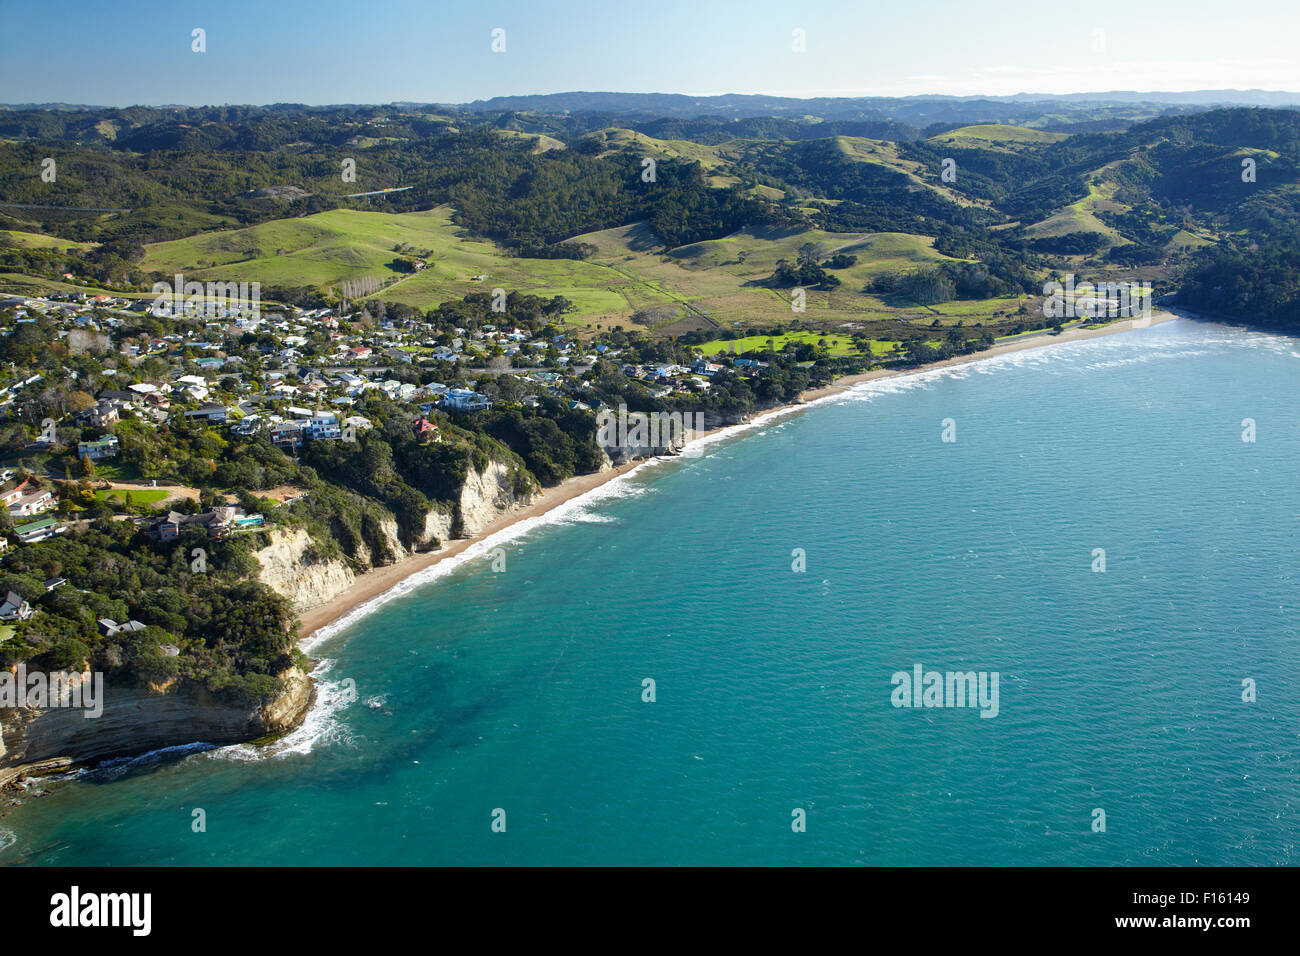 Plage d'Orewa, Hatfield, Hibiscus Coast, au nord de l'île du nord, Auckland, Nouvelle-Zélande - vue aérienne Banque D'Images